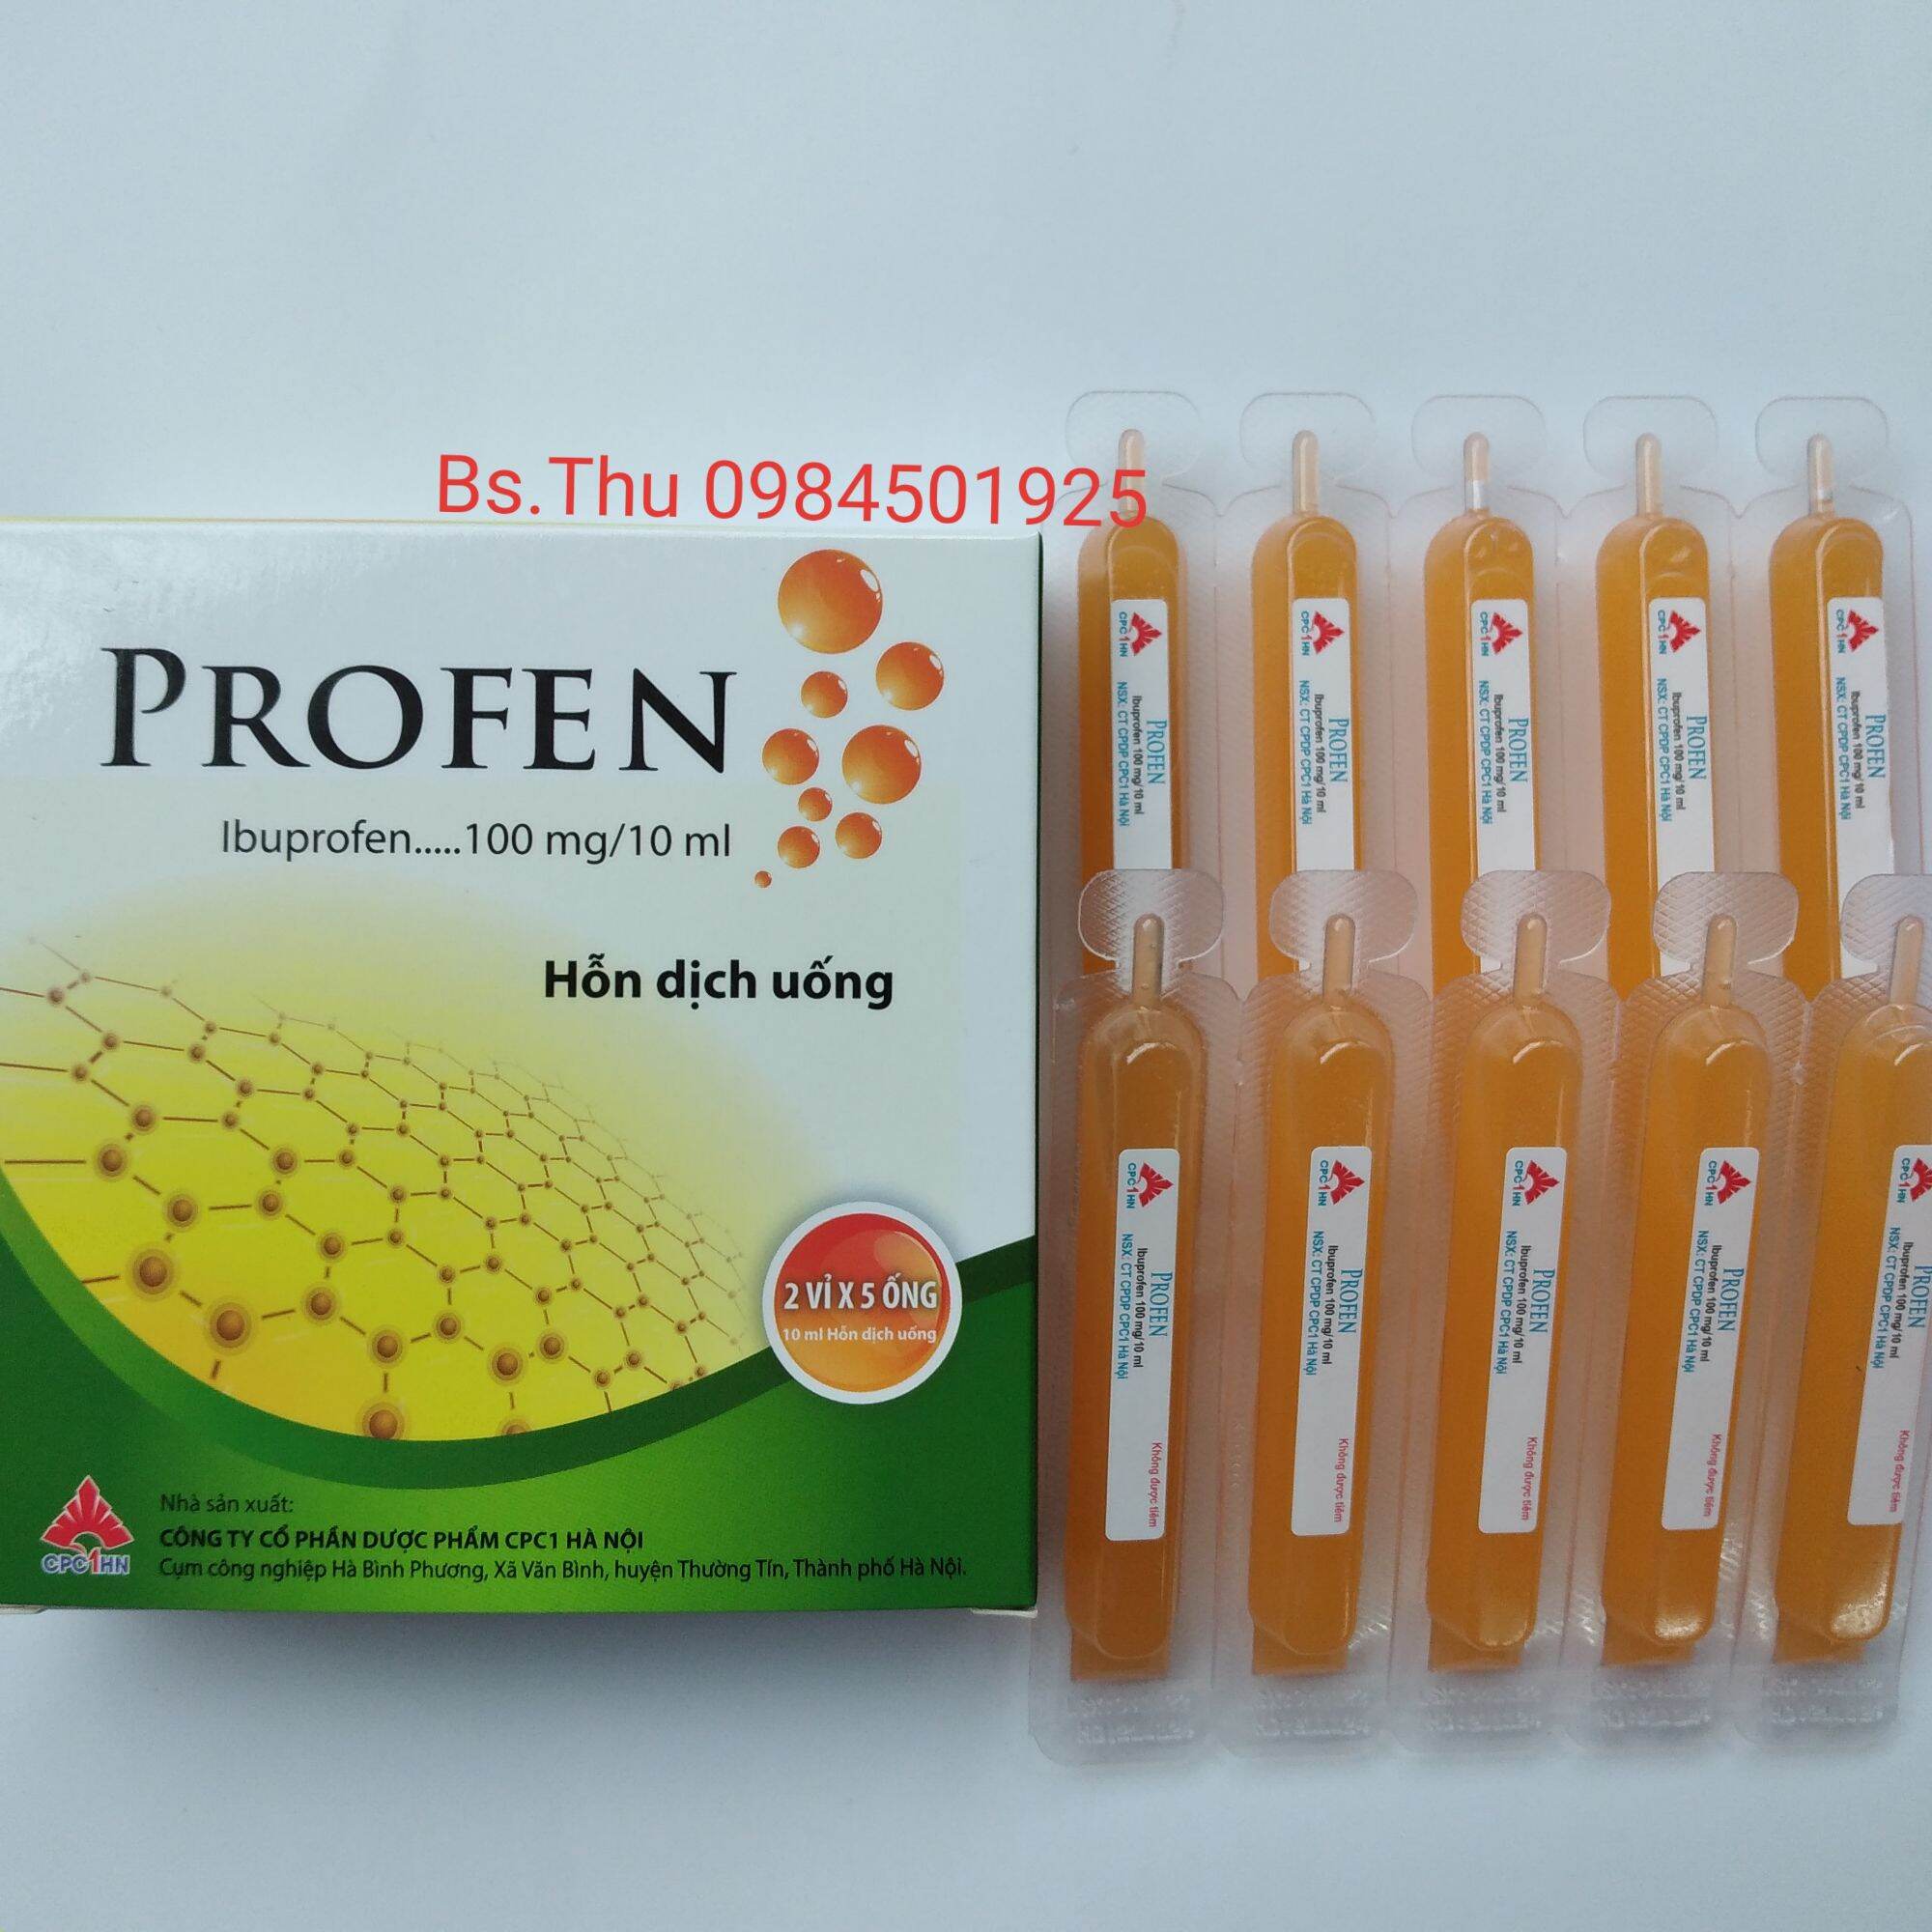 Chính hãng profen hộp 10 ống ibuprofen100mg 10ml vị cam dễ uống - ảnh sản phẩm 1